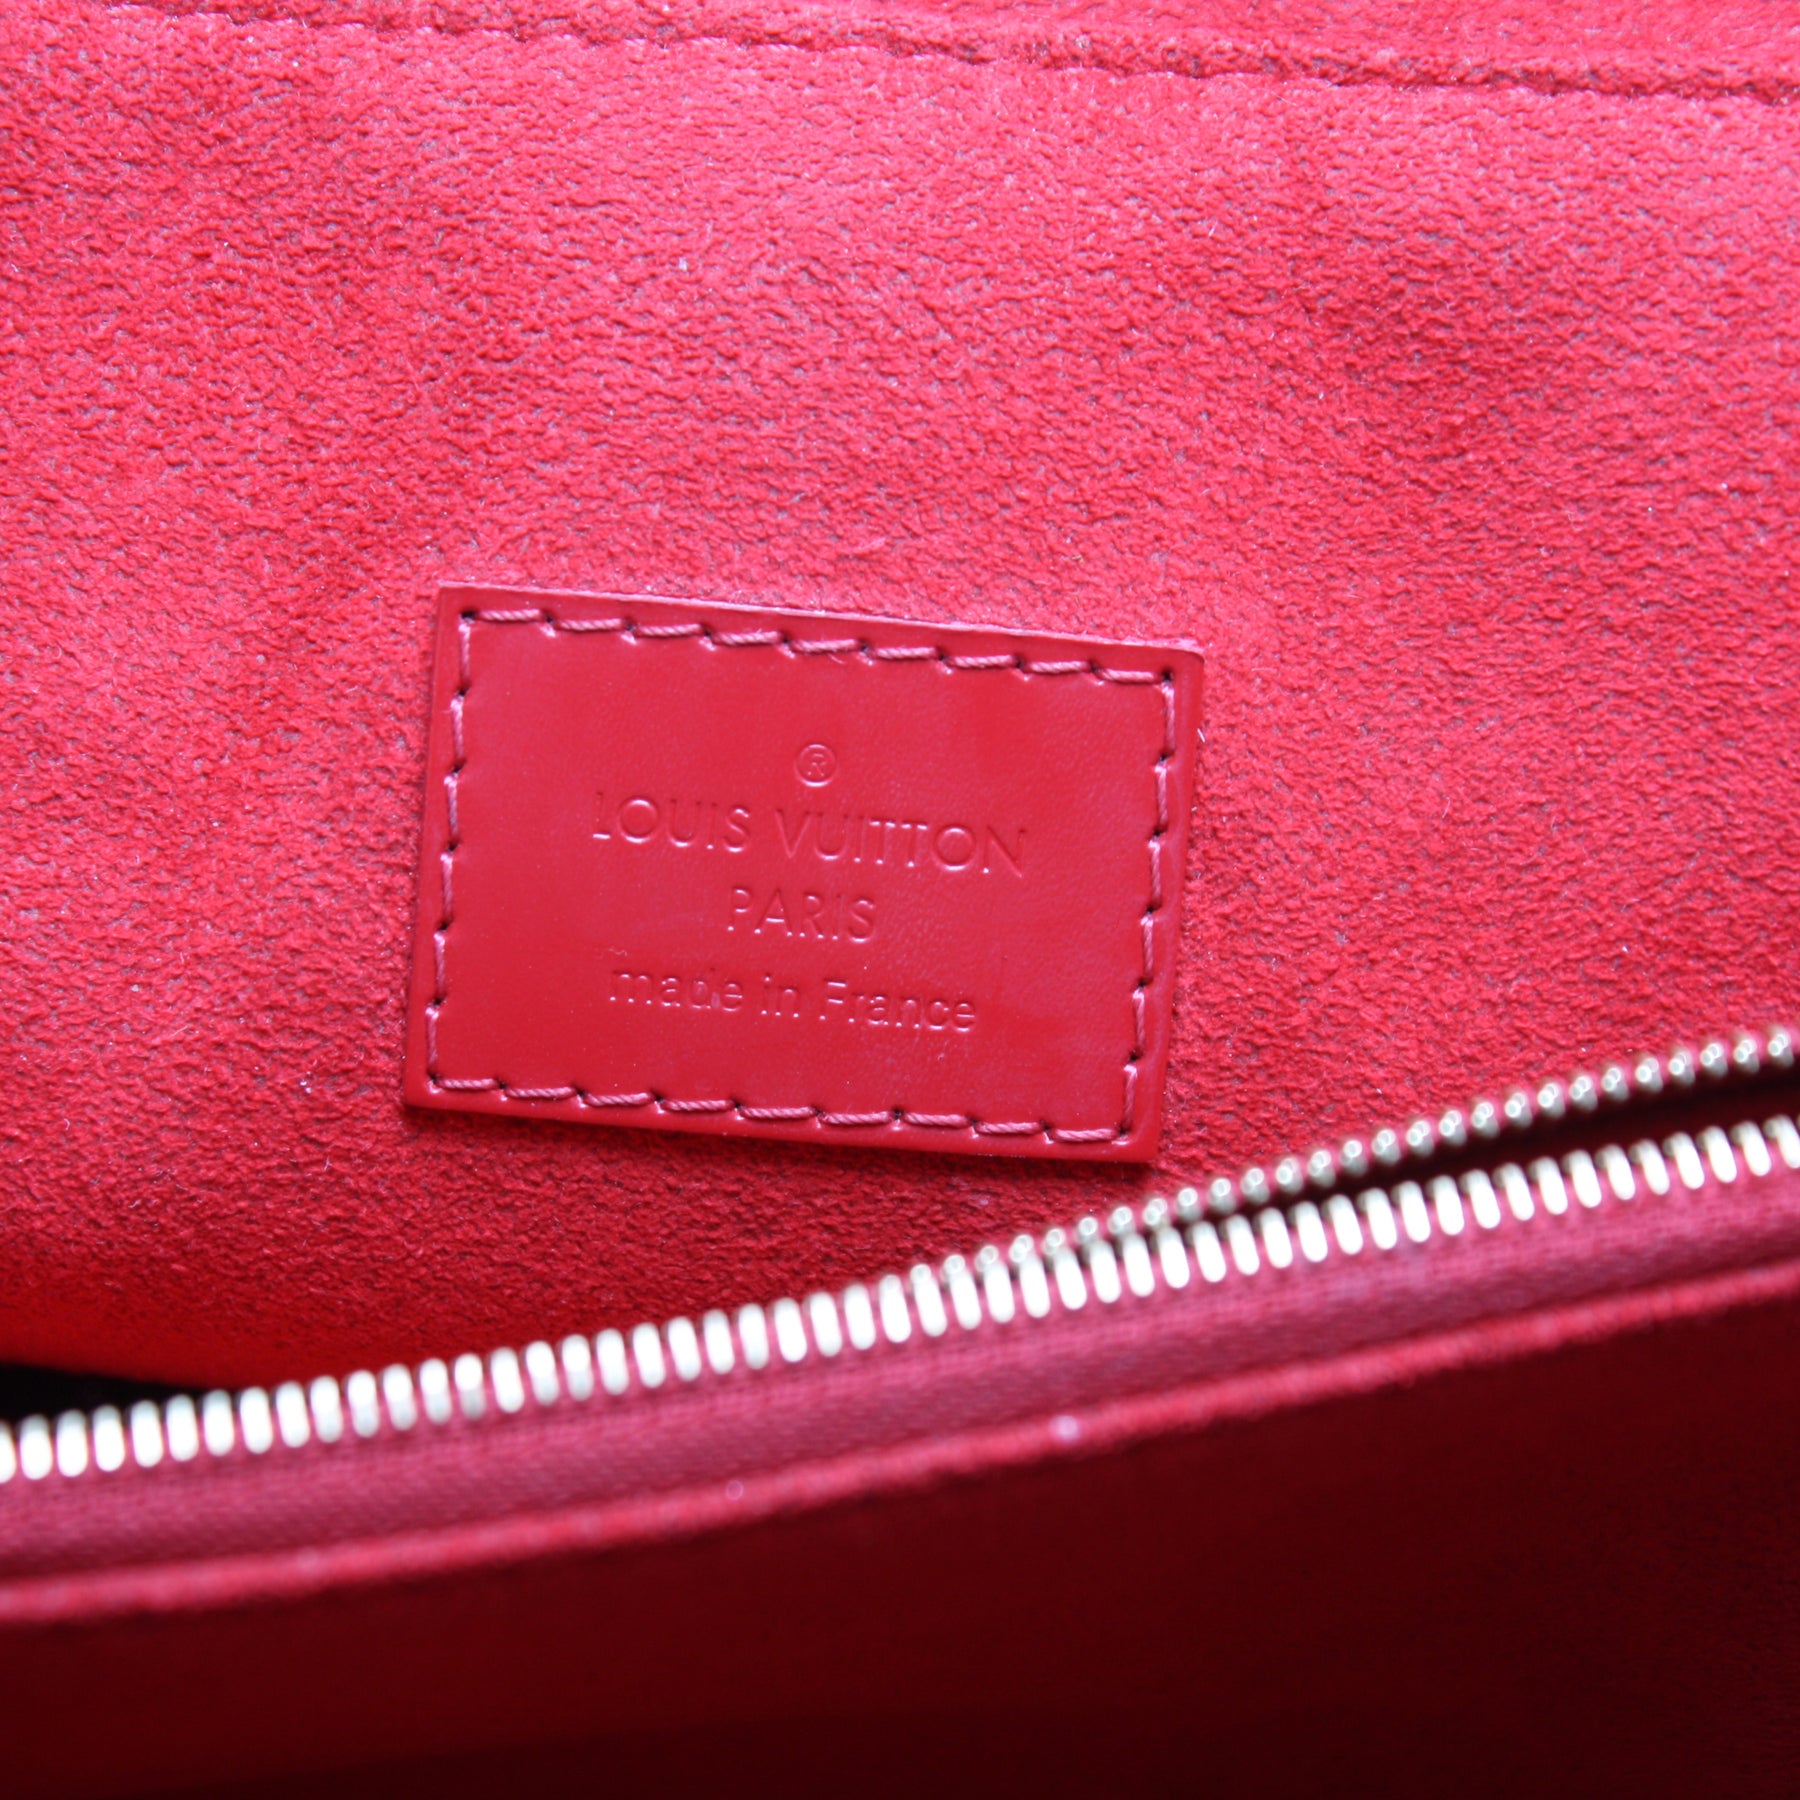 Louis Vuitton 'Damier Ebene Caissa Clutch' – Brilliant Clothing Boutique Inc